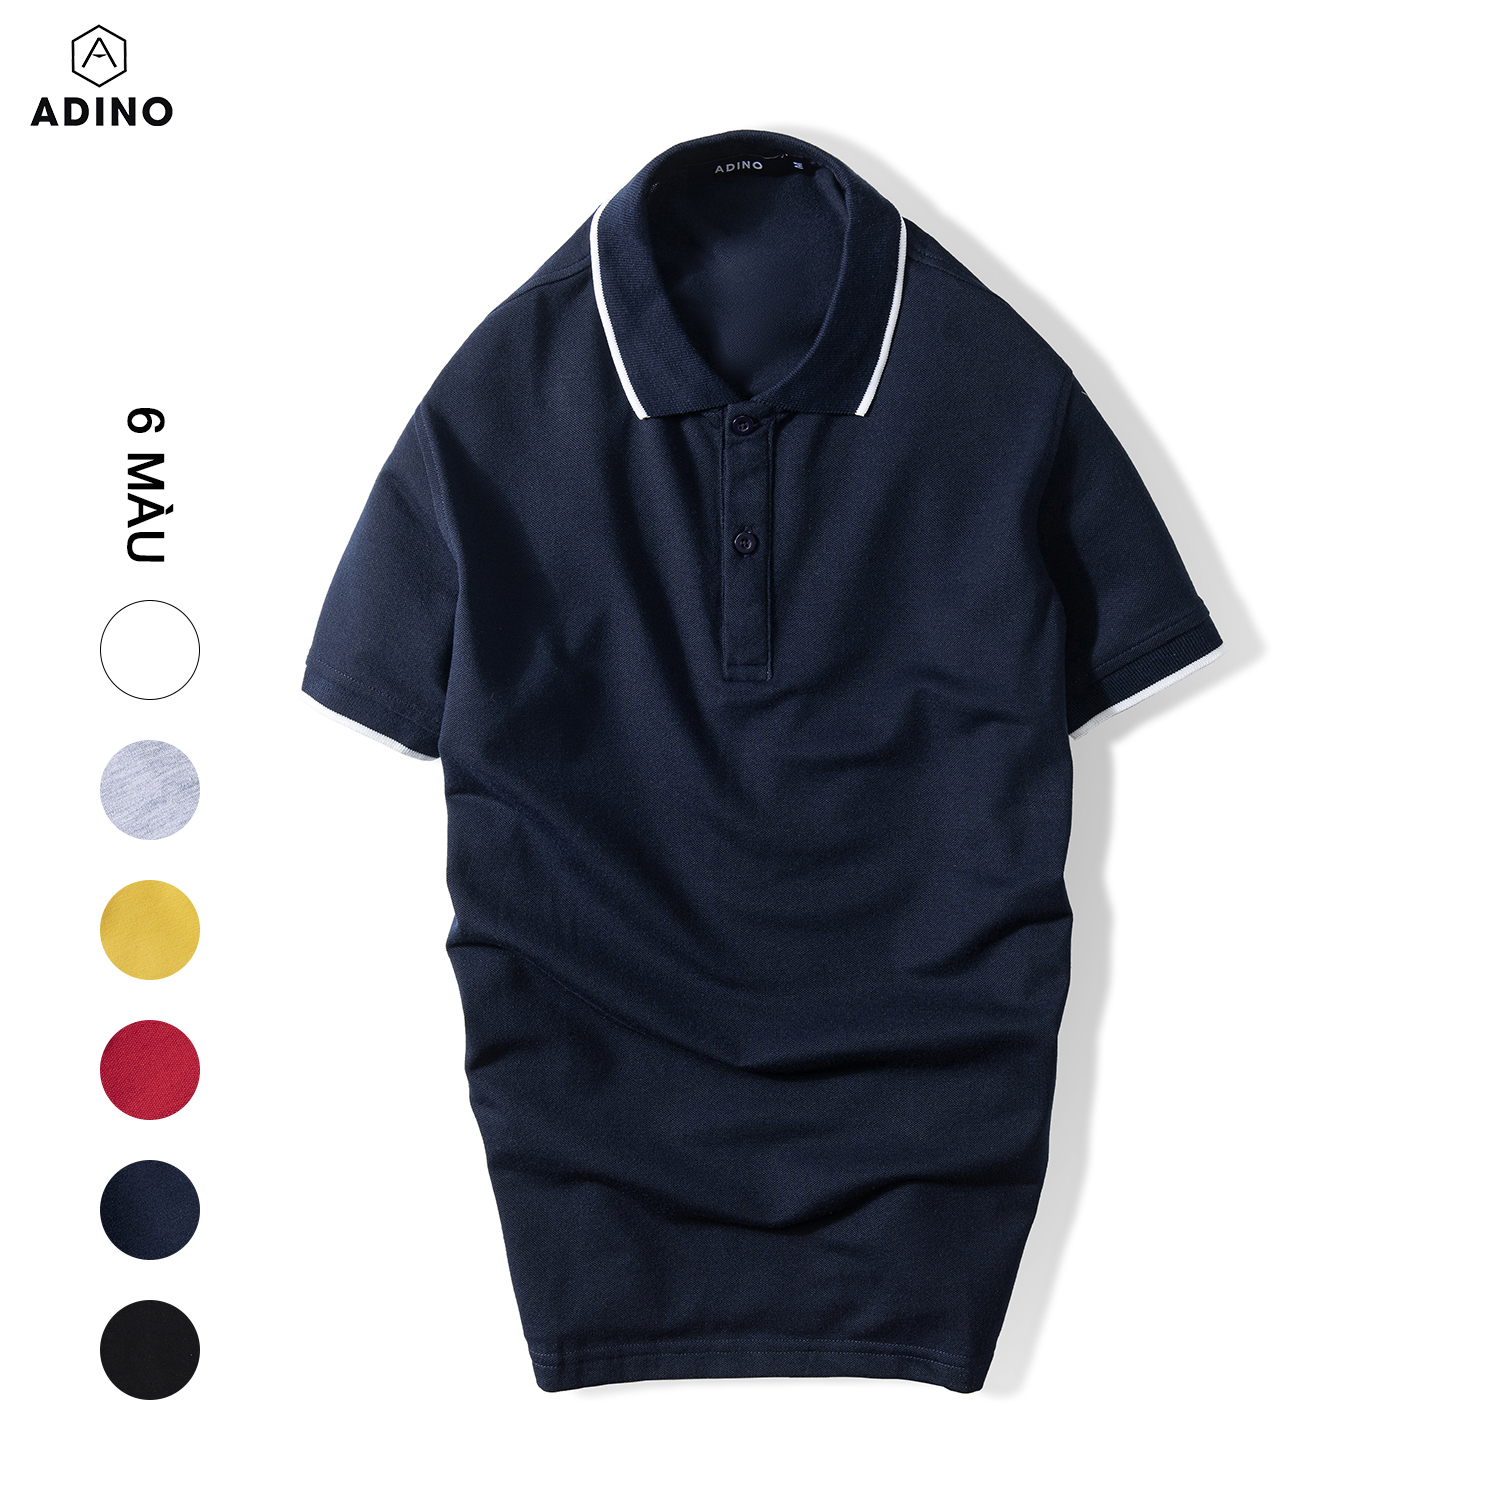 Áo polo nam ADINO màu xanh đen phối viền vải cotton co giãn dáng slimfit trẻ trung AP75